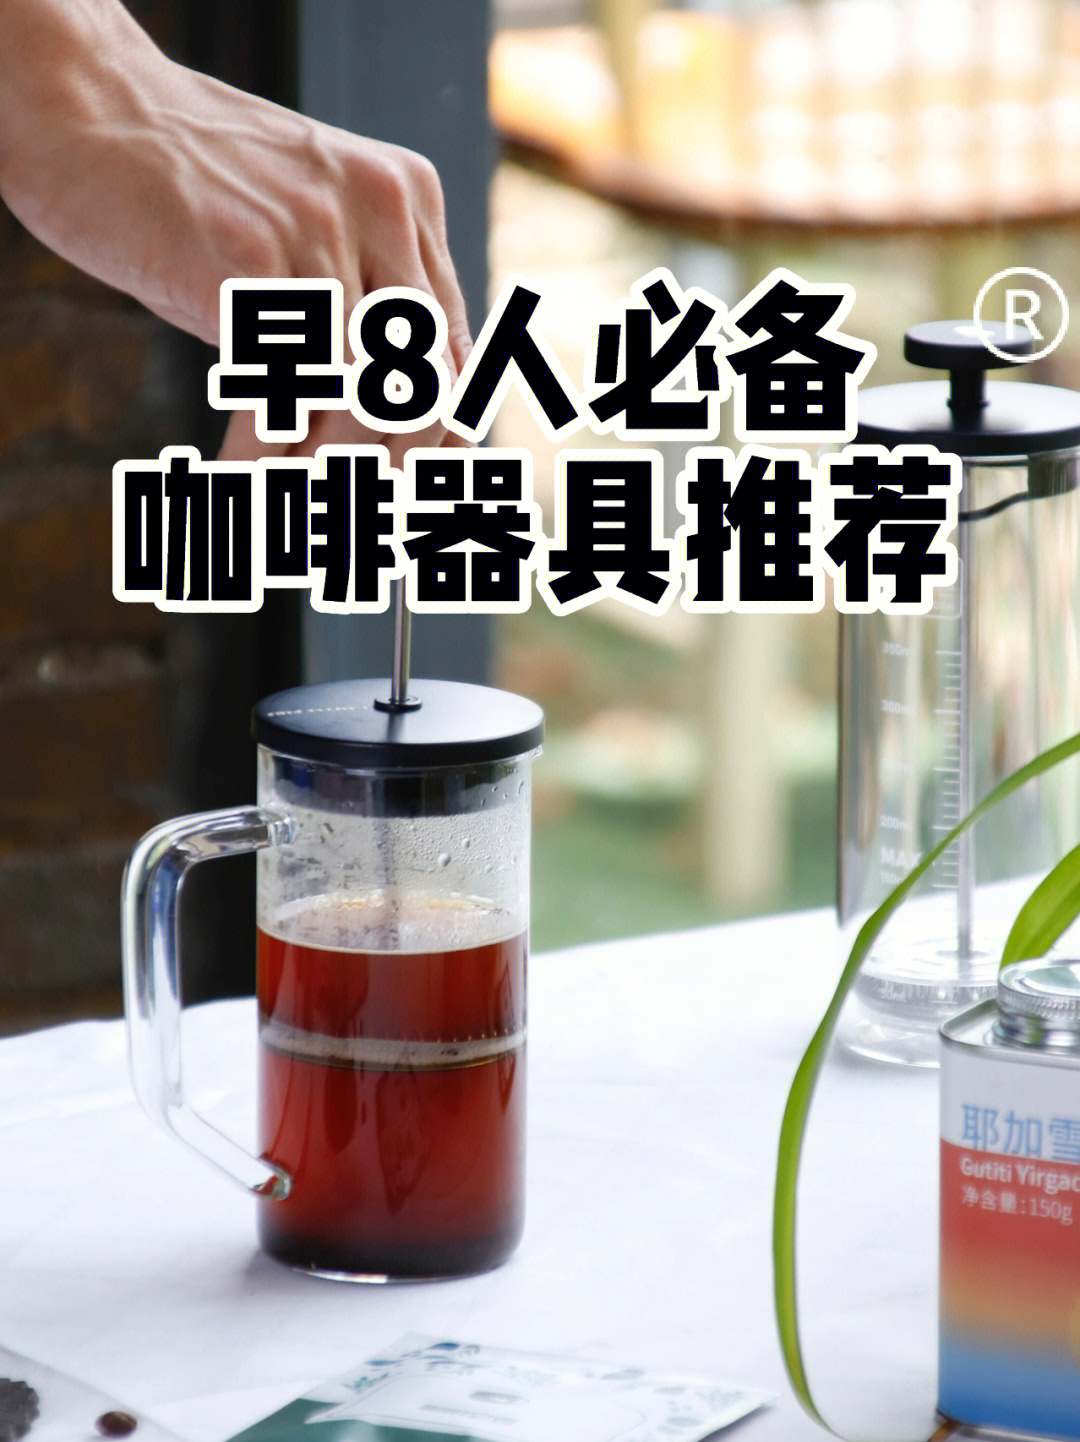 法压壶咖啡用法美式拿铁咖啡器具推荐75